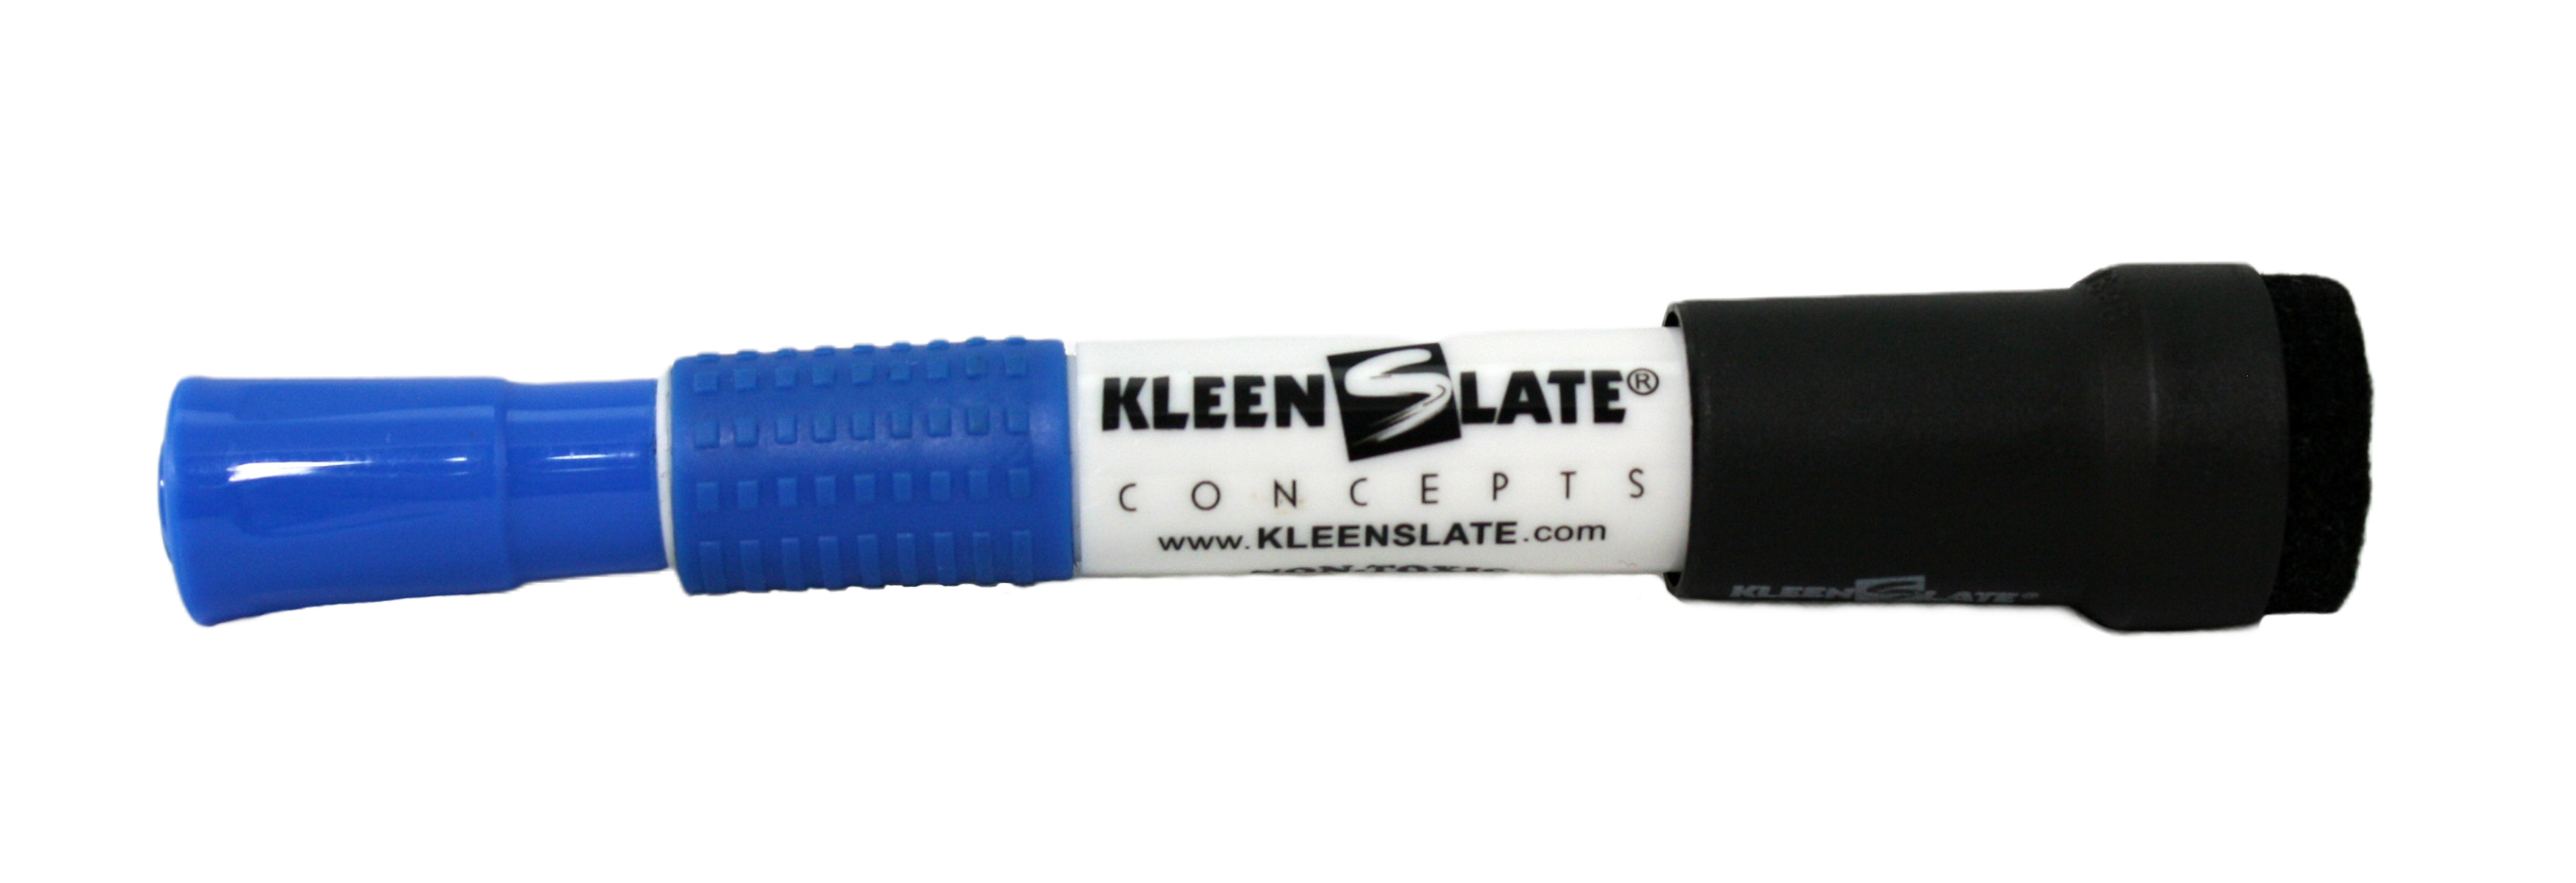 KleenSlate Eraser, Blue, with a black KleenSlate eraser on the end